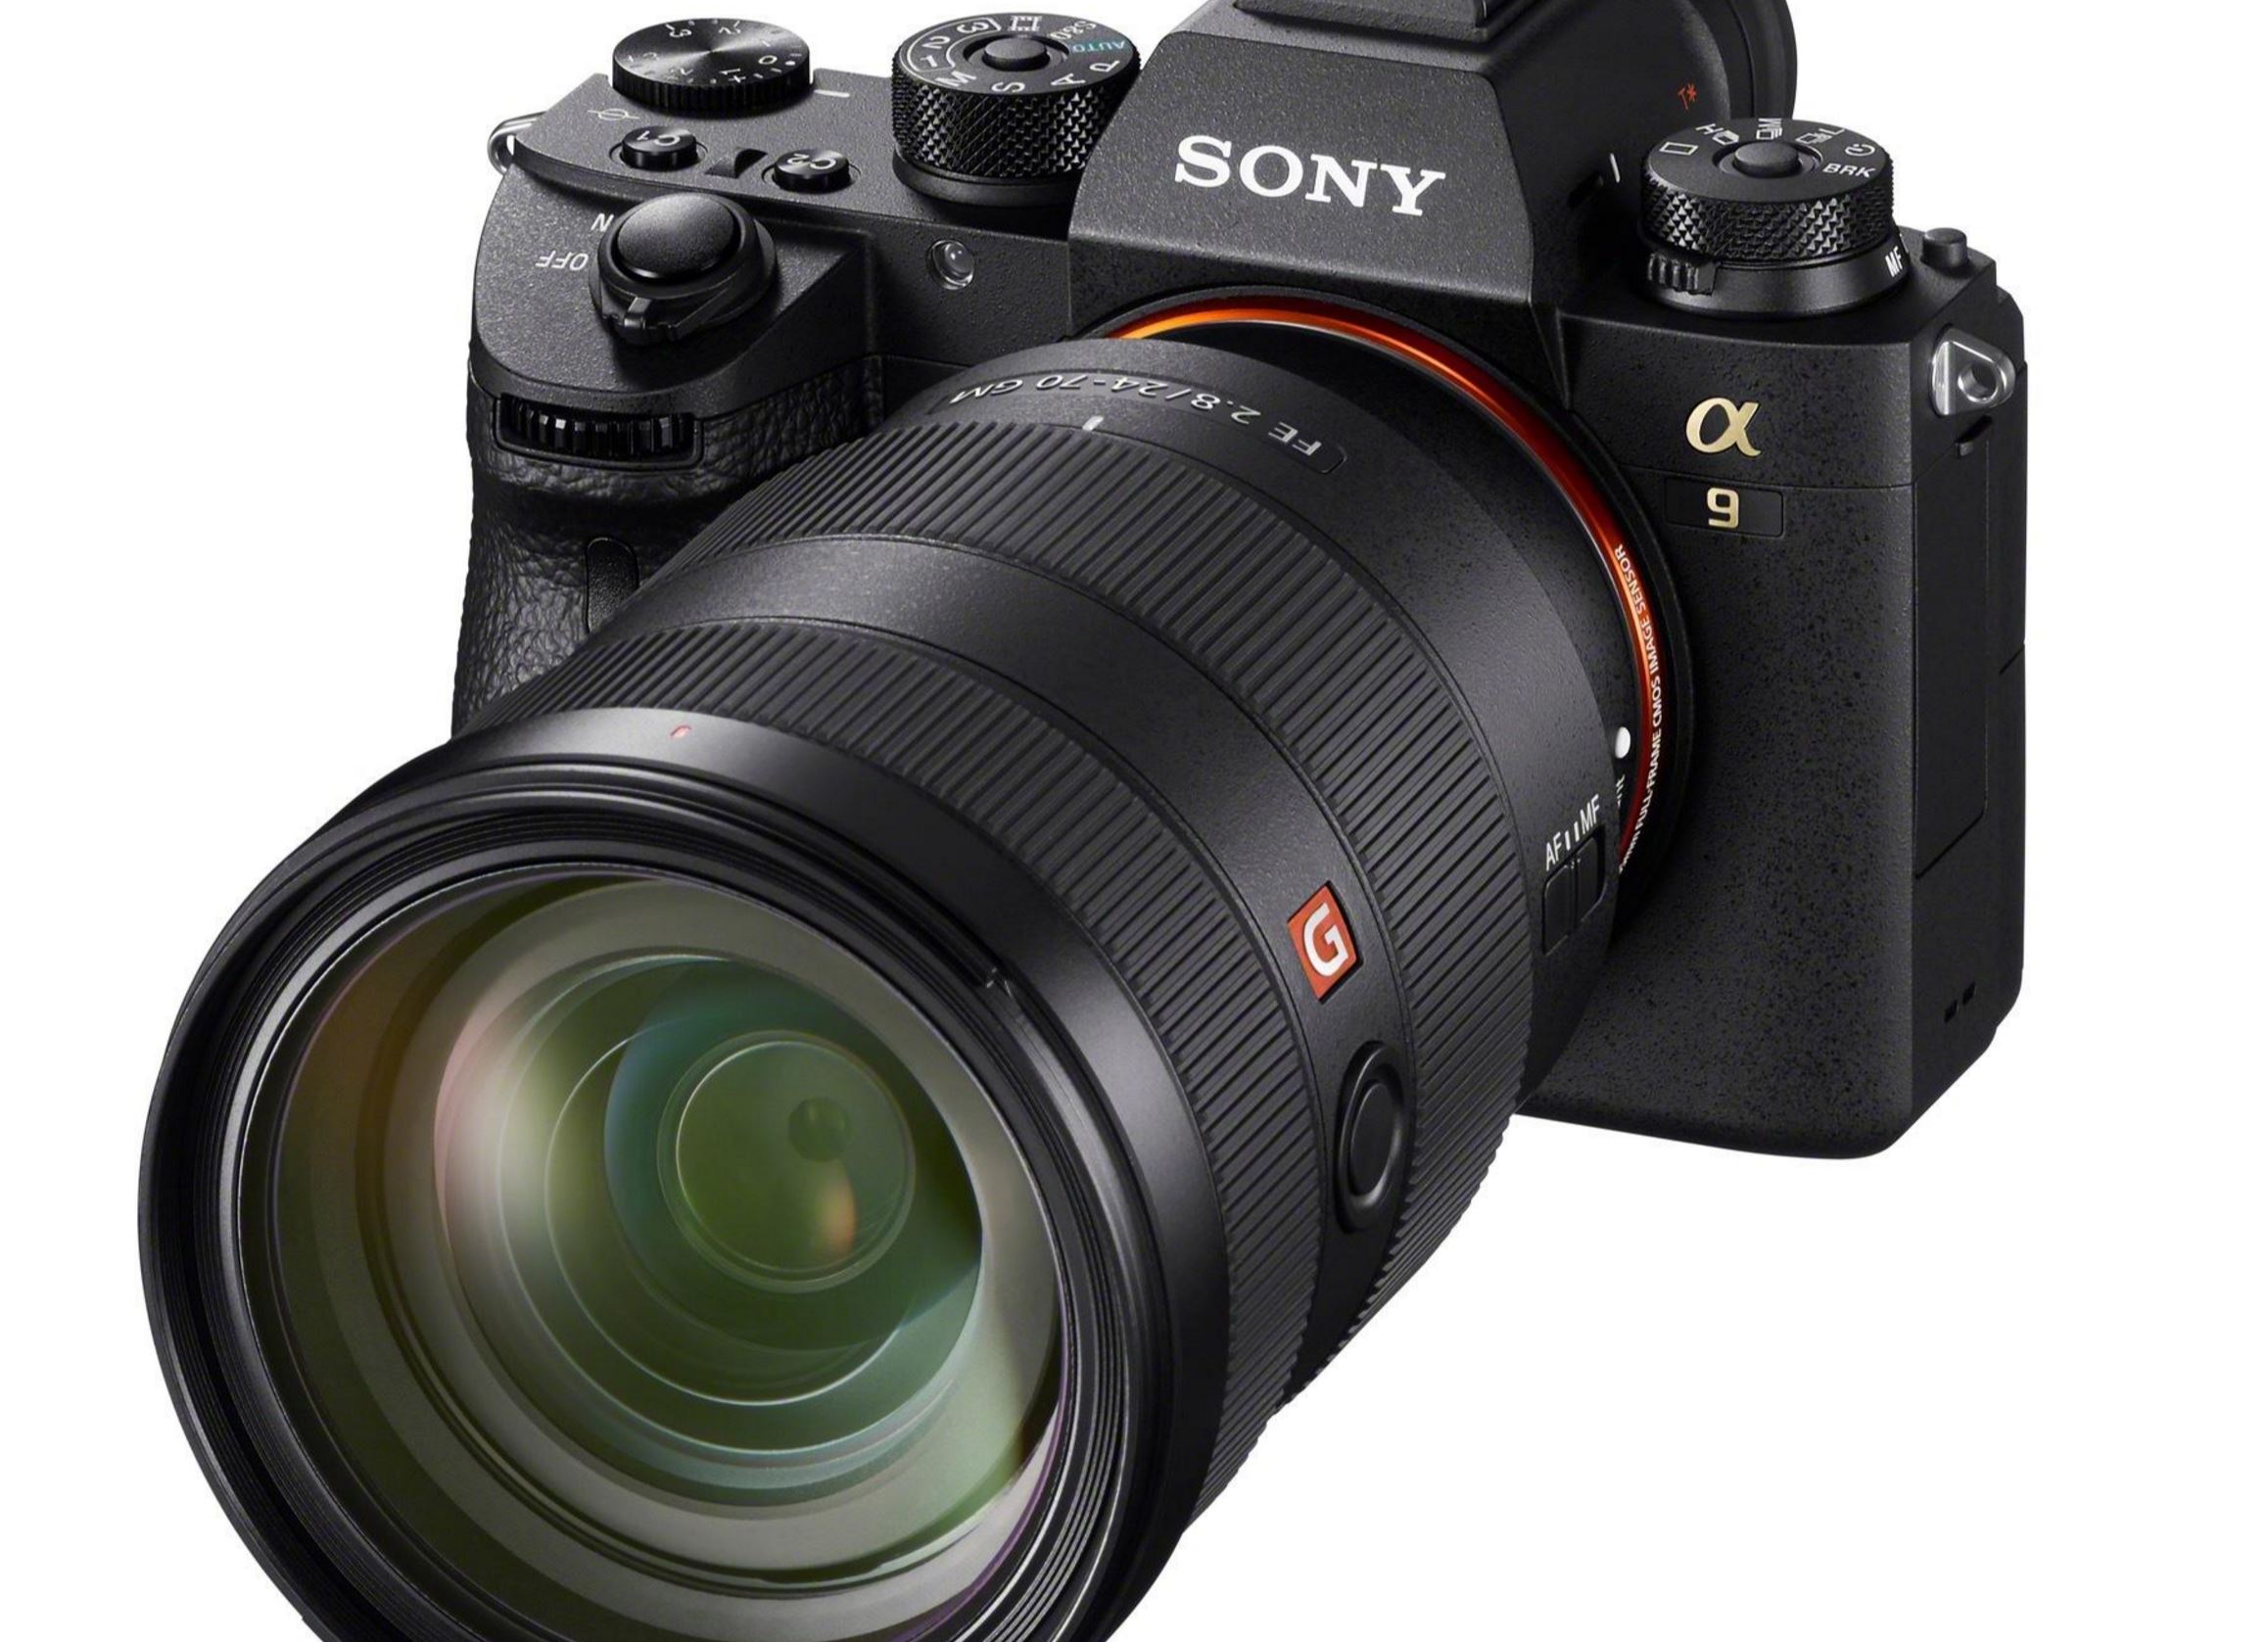 Sony Alpha a9, FE 100-400mm f/4.5-5.6 GM Lens Officially Announced